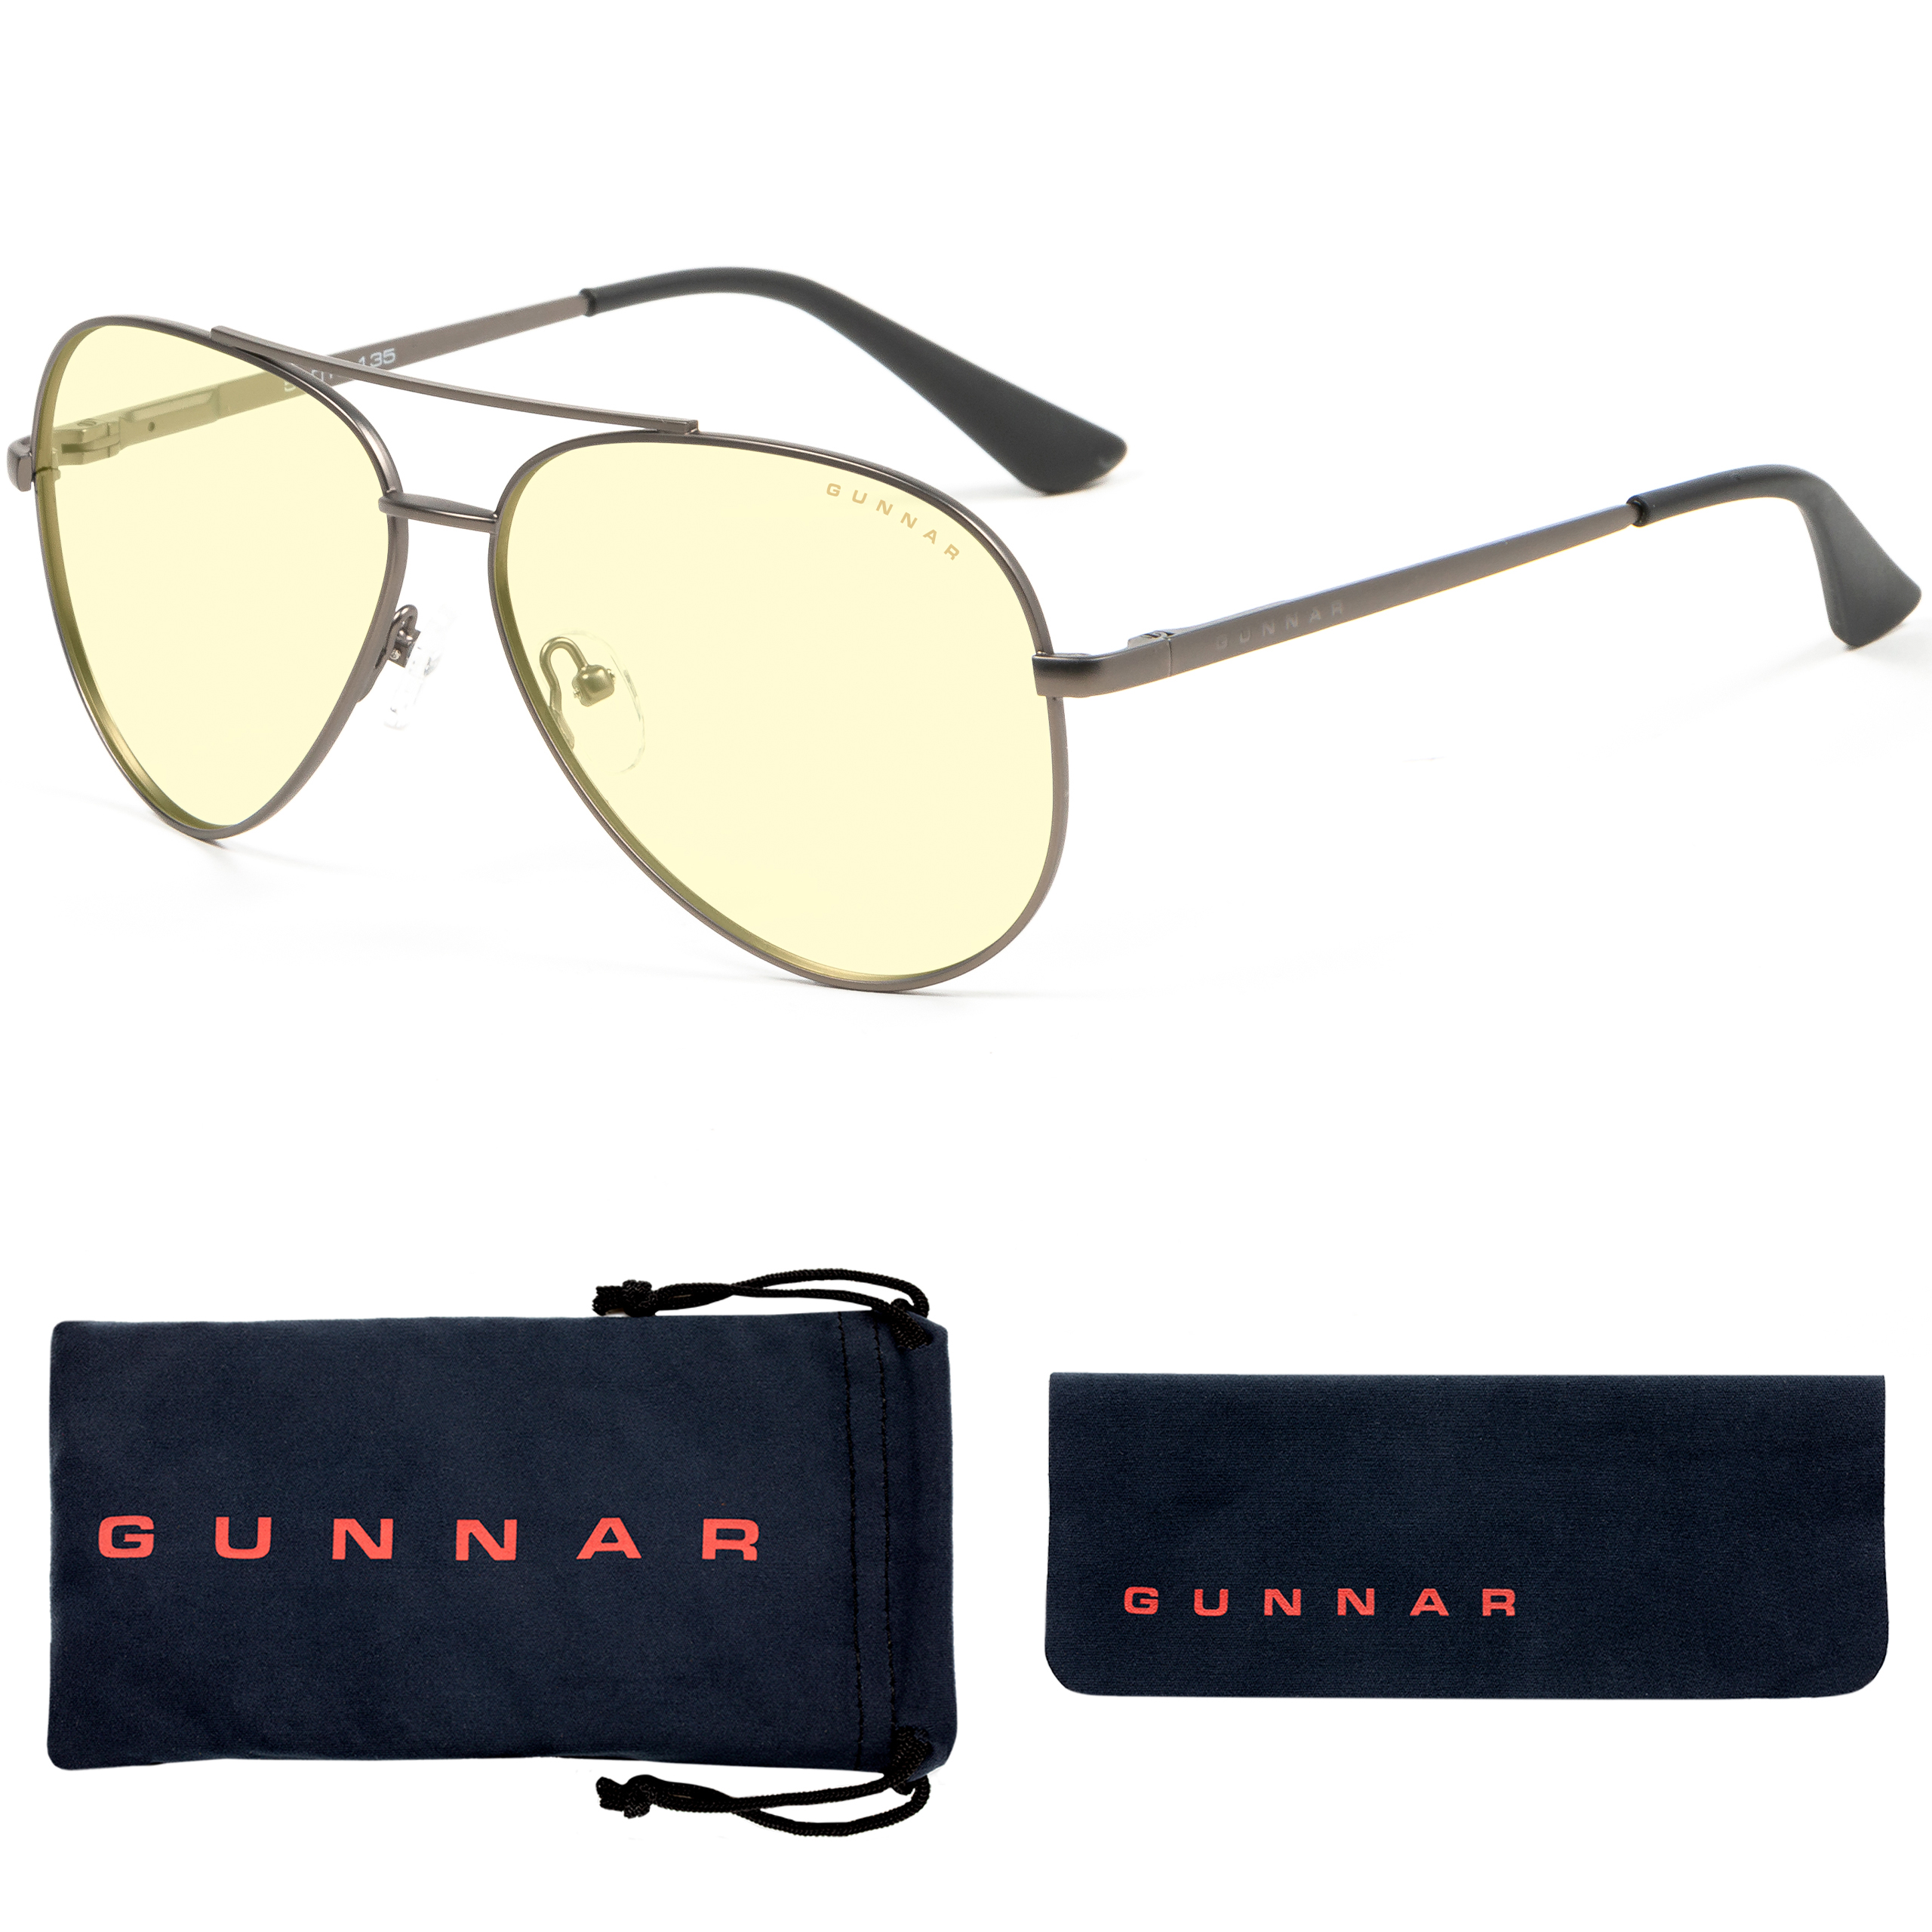 GUNNAR Maverick, Gunmetal Premium, Tönung, Brille Rahmen, Amber Gaming Blaulichtfilter, UV-Schutz